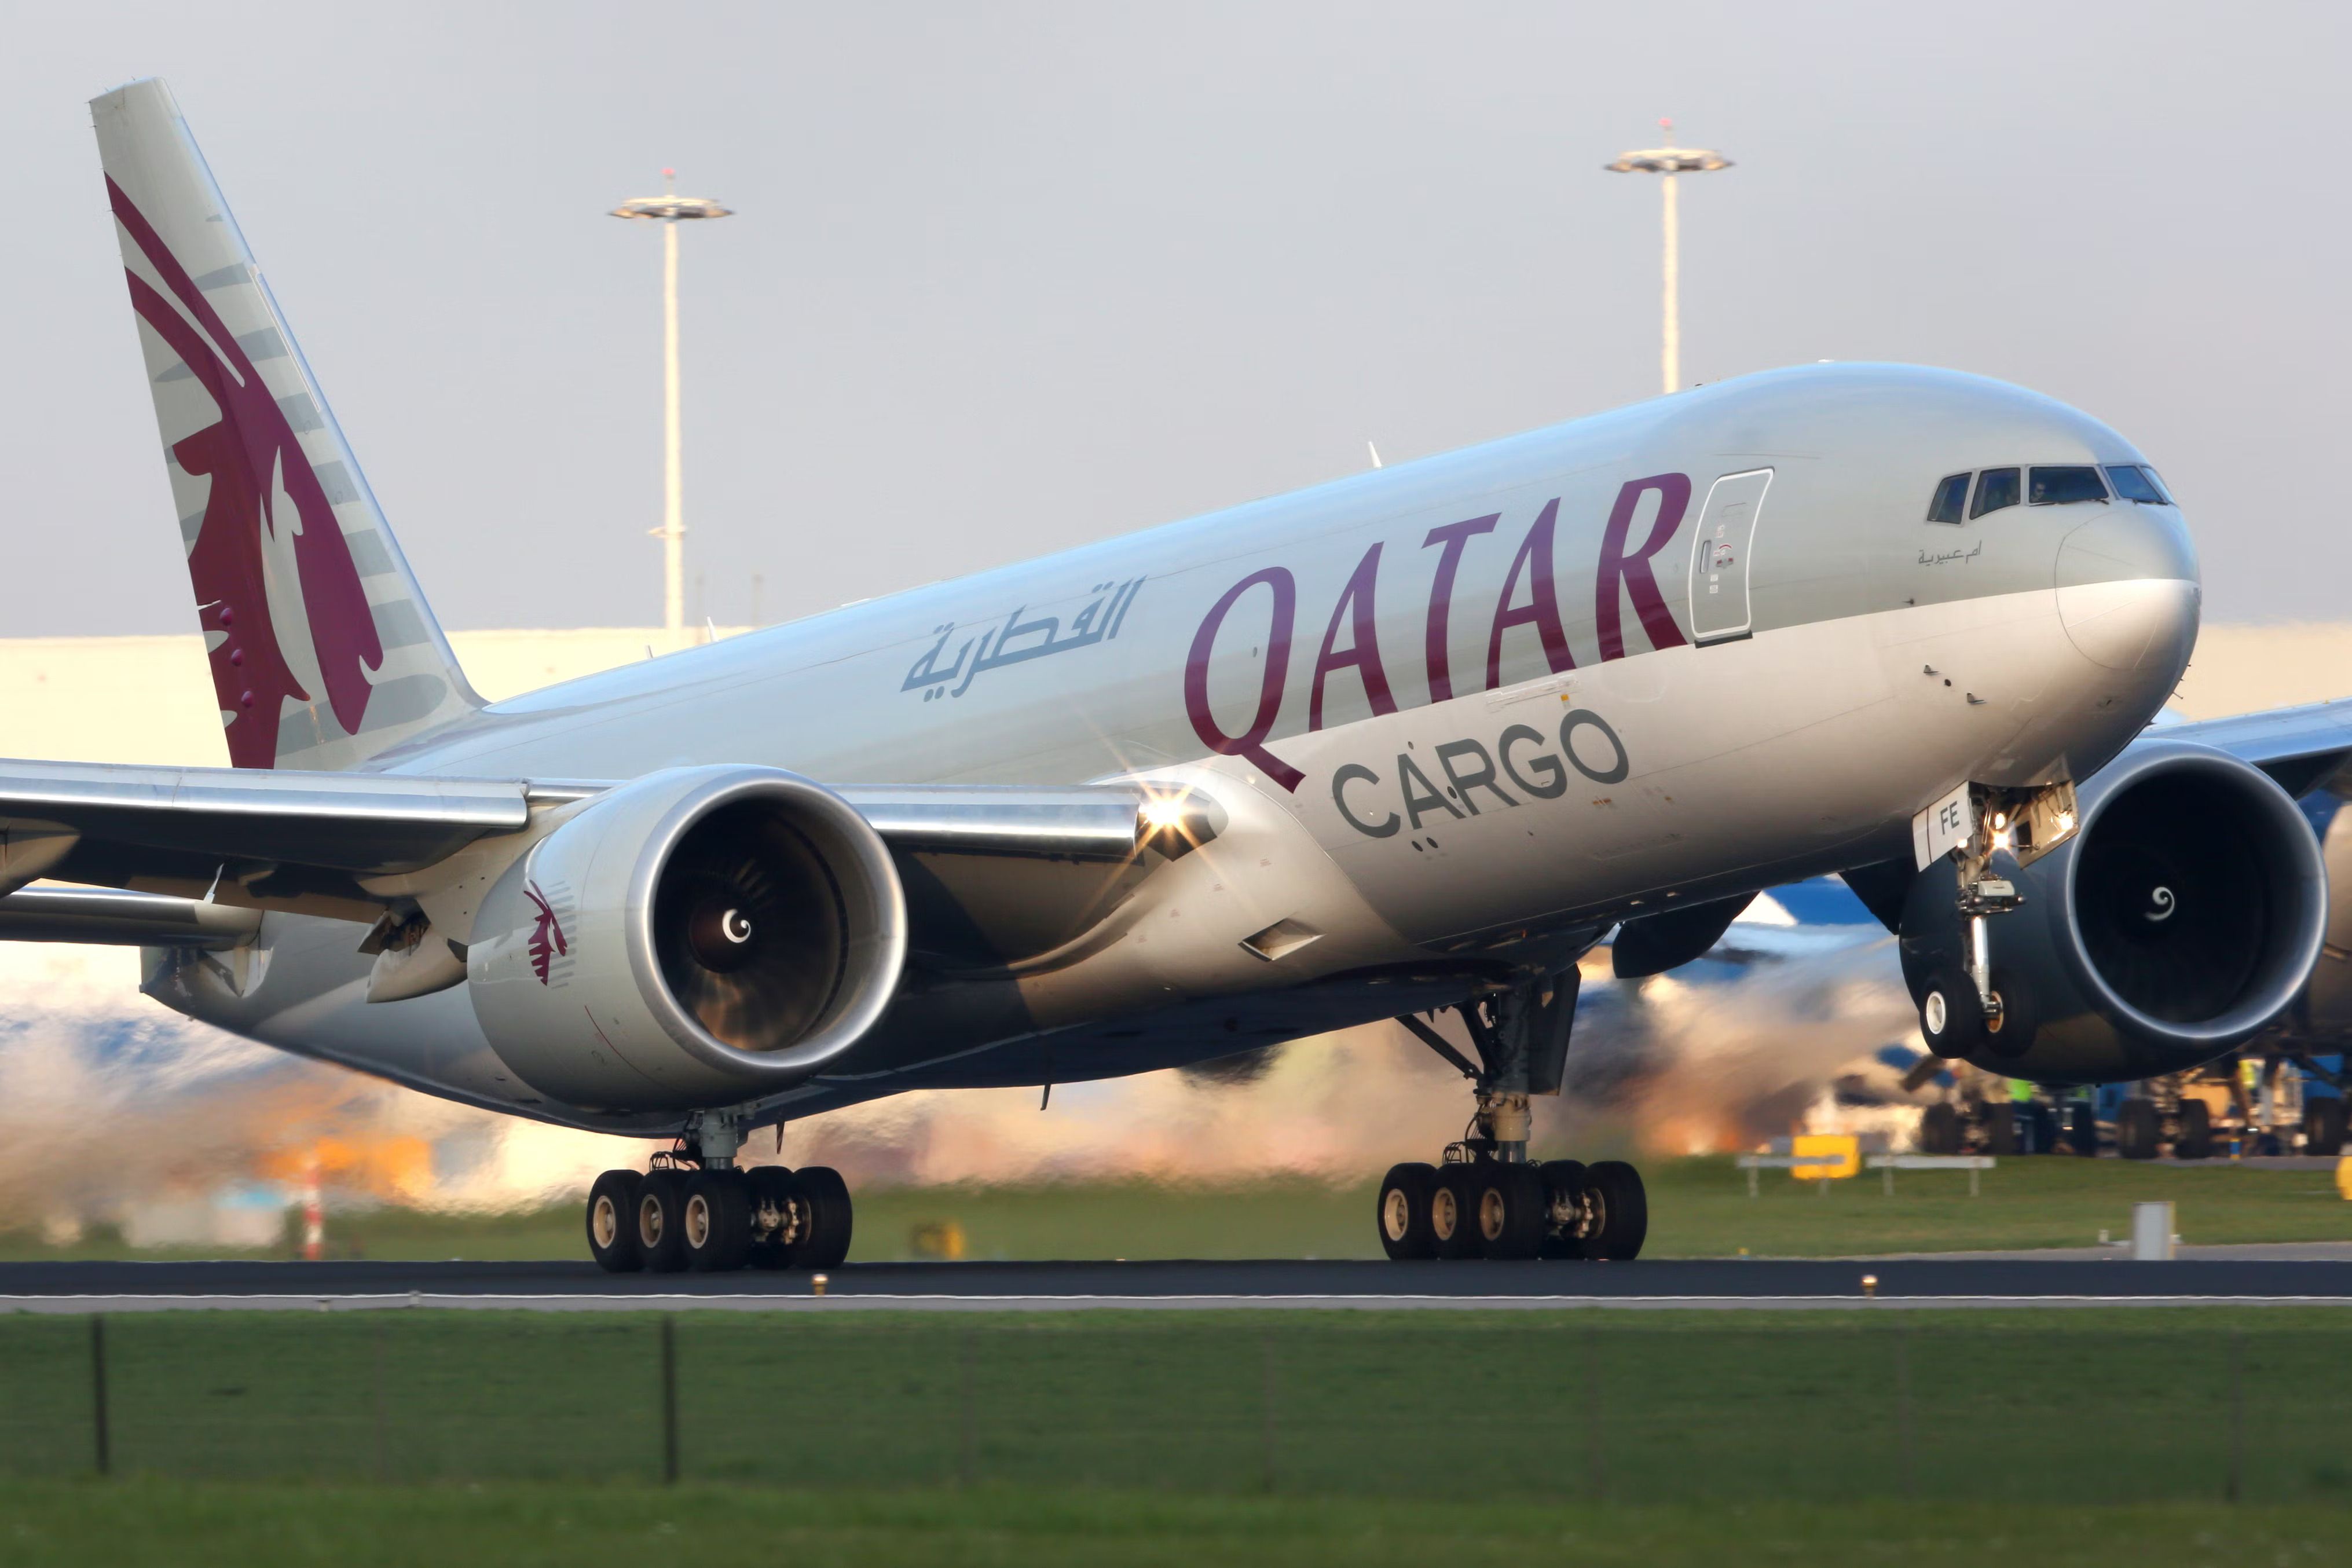 Qatar Airways Cargo Boeing 777F